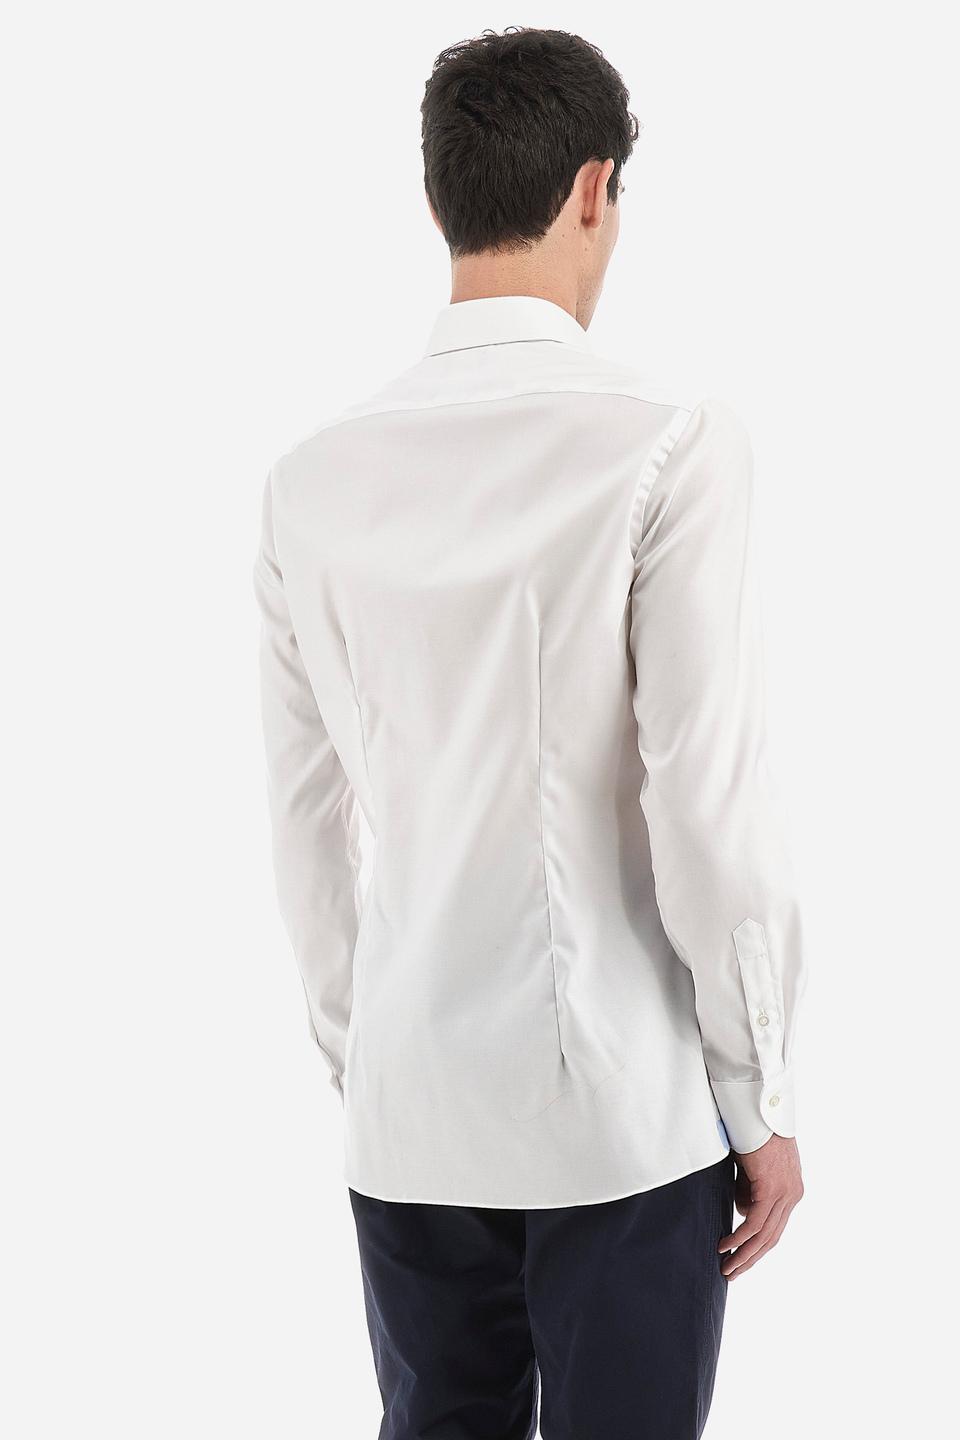 Camicia stile classico uomo in cotone maniche lunghe - Paternò | La Martina - Official Online Shop